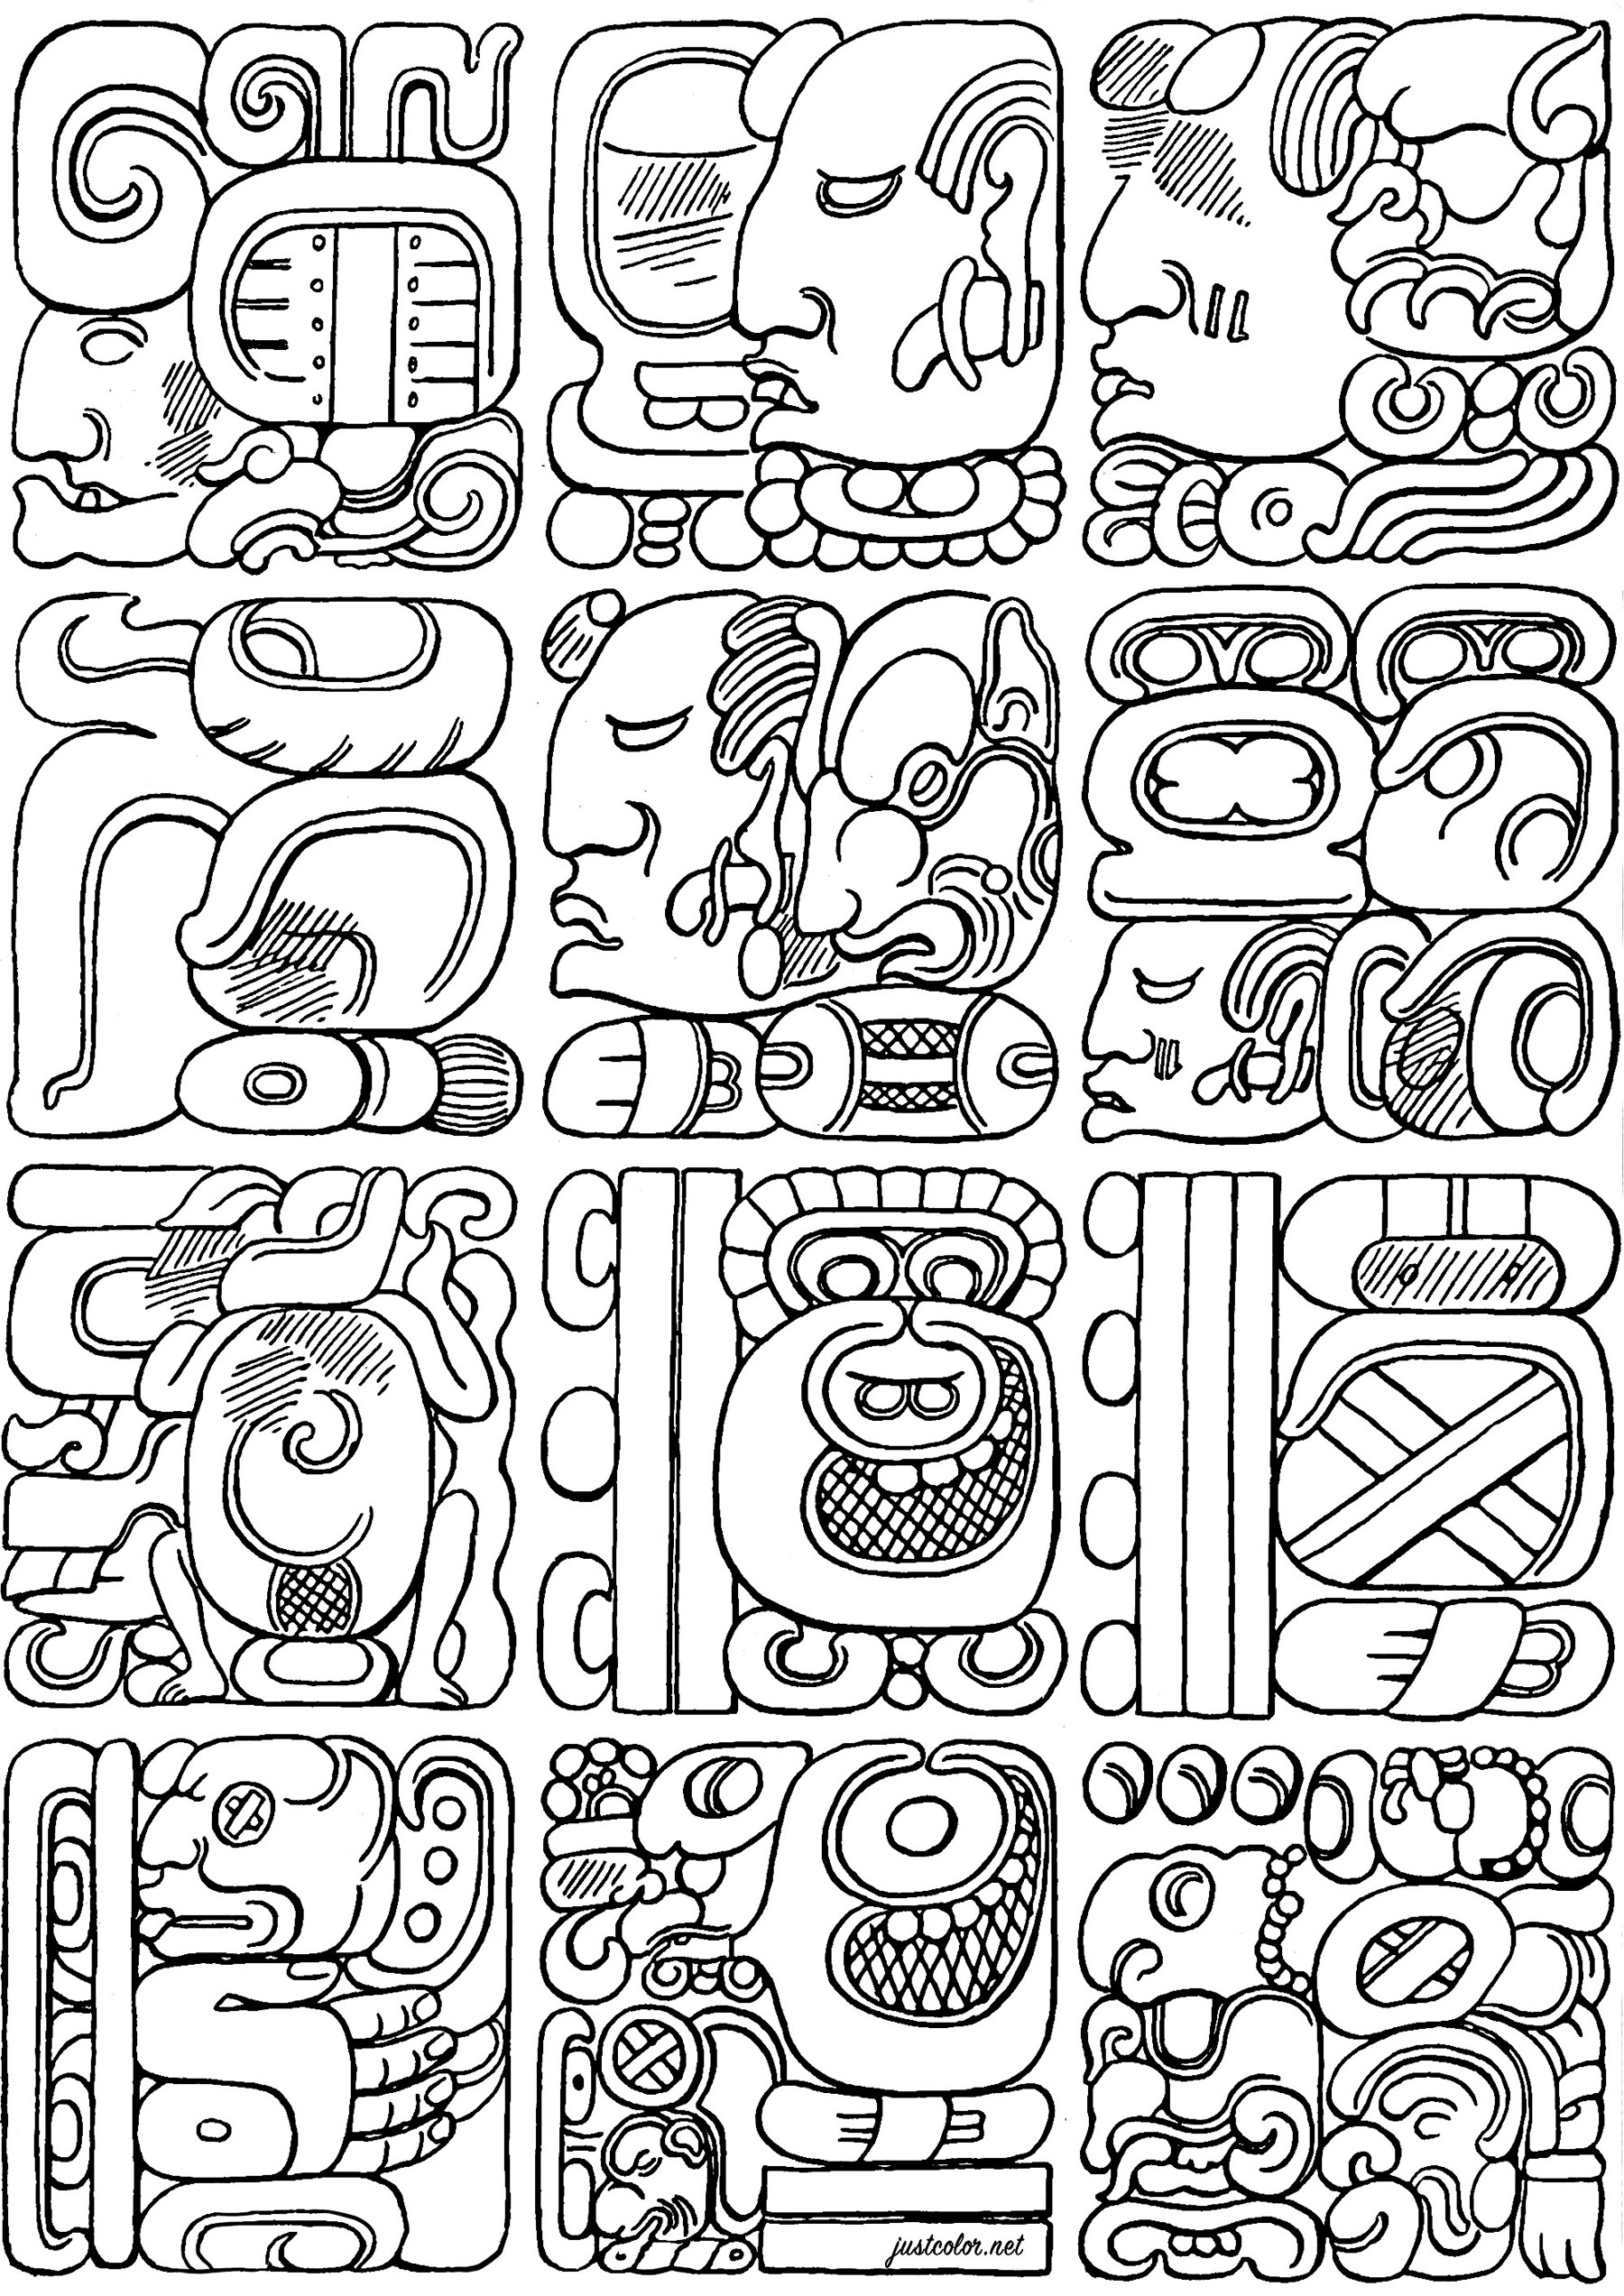 Farbgebung nach authentischen Maya-Glyphen. Die Maya-Glyphen sind eines der wenigen voll entwickelten Schriftsysteme des präkolumbianischen Amerikas, mit dem die Maya-Sprachen mit nahezu perfekter Präzision transkribiert werden können.Mit ihren komplexen glyphischen Inschriften hielten die Maya historische Ereignisse, Mythen, Mathematik und astronomische Beobachtungen fest, die Forscher auch heute noch faszinieren.